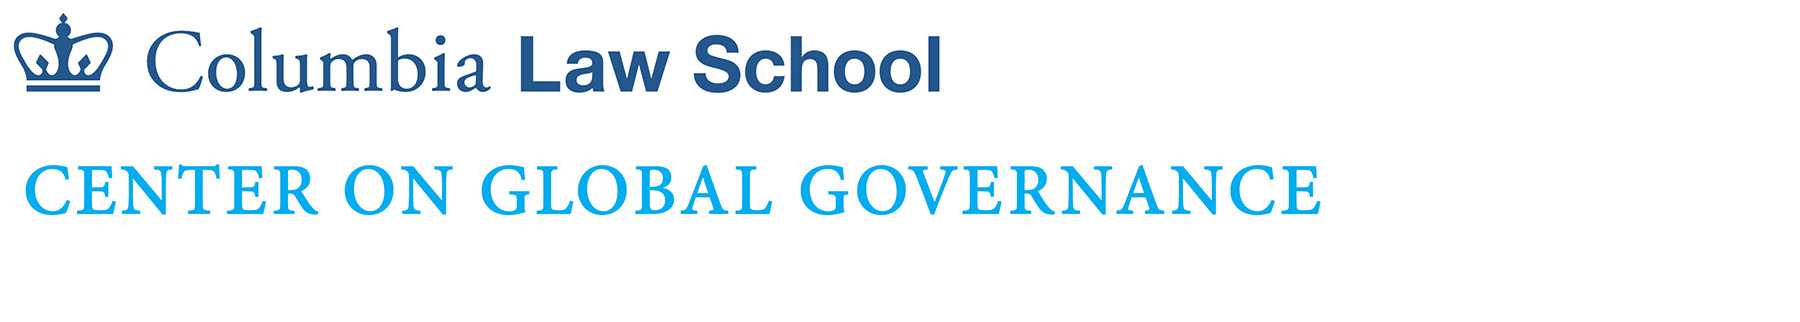 Center on Global Governance logo